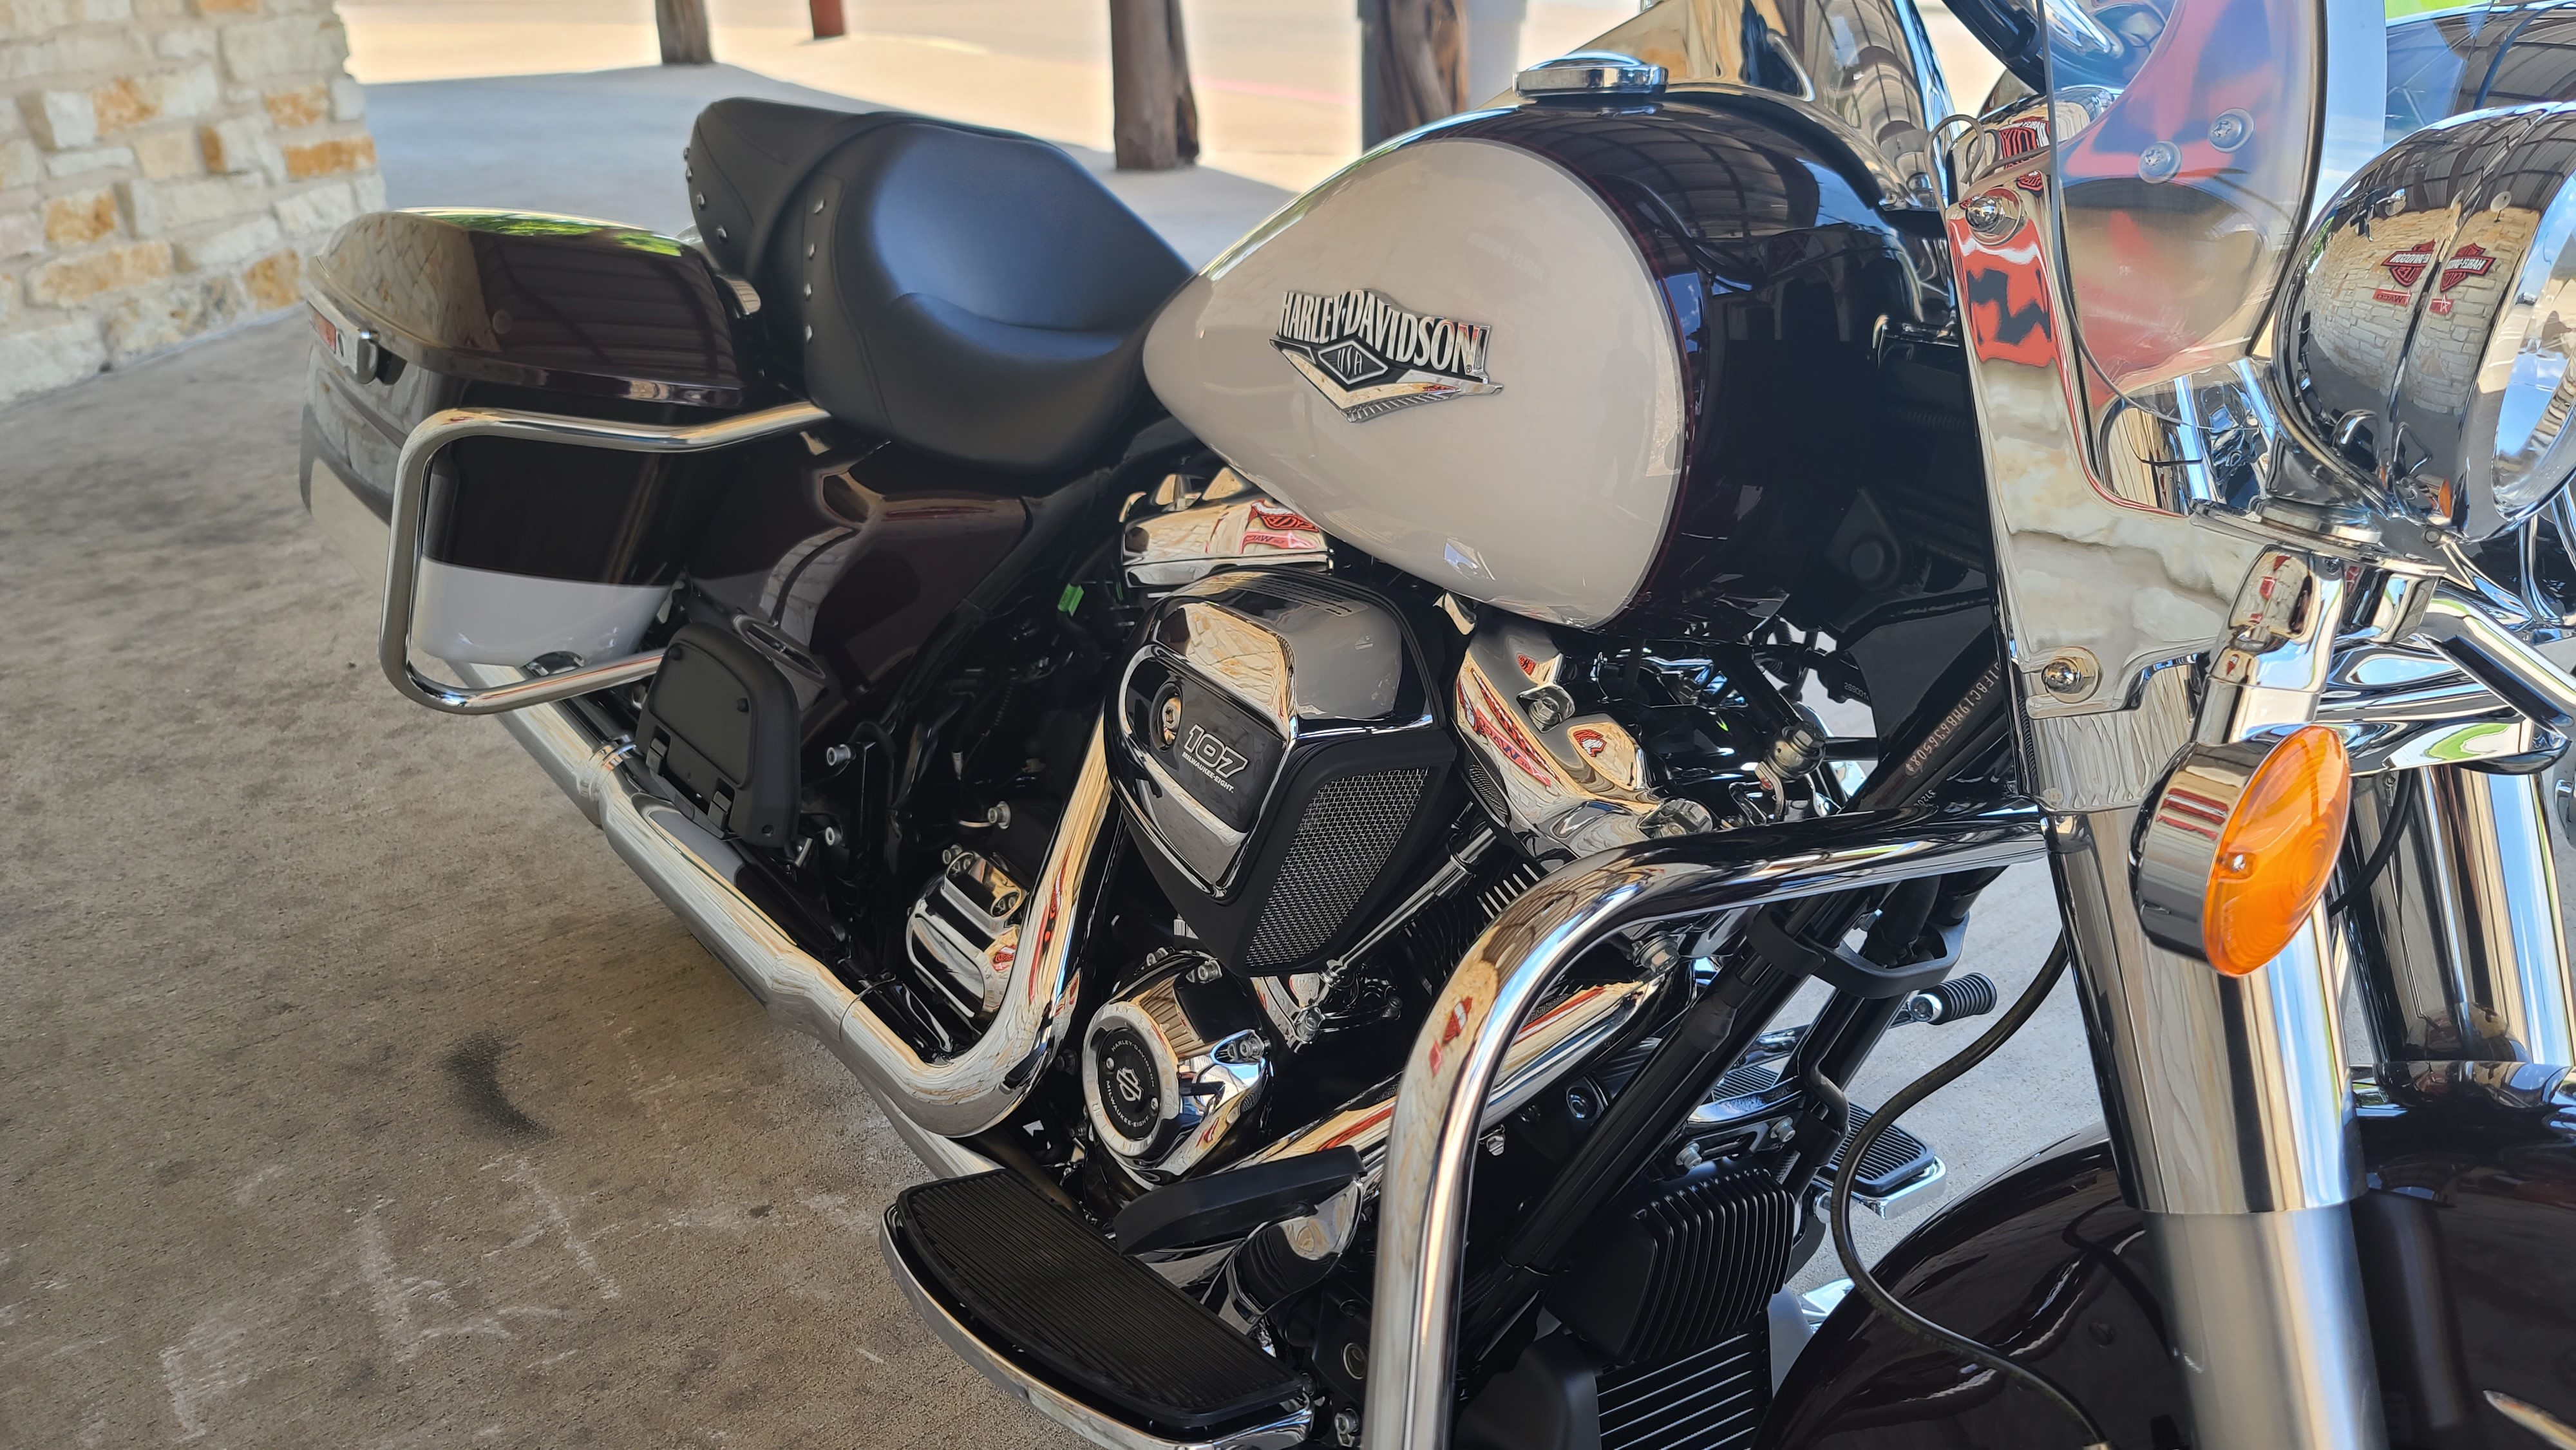 2021 Harley-Davidson Touring Road King at Harley-Davidson of Waco